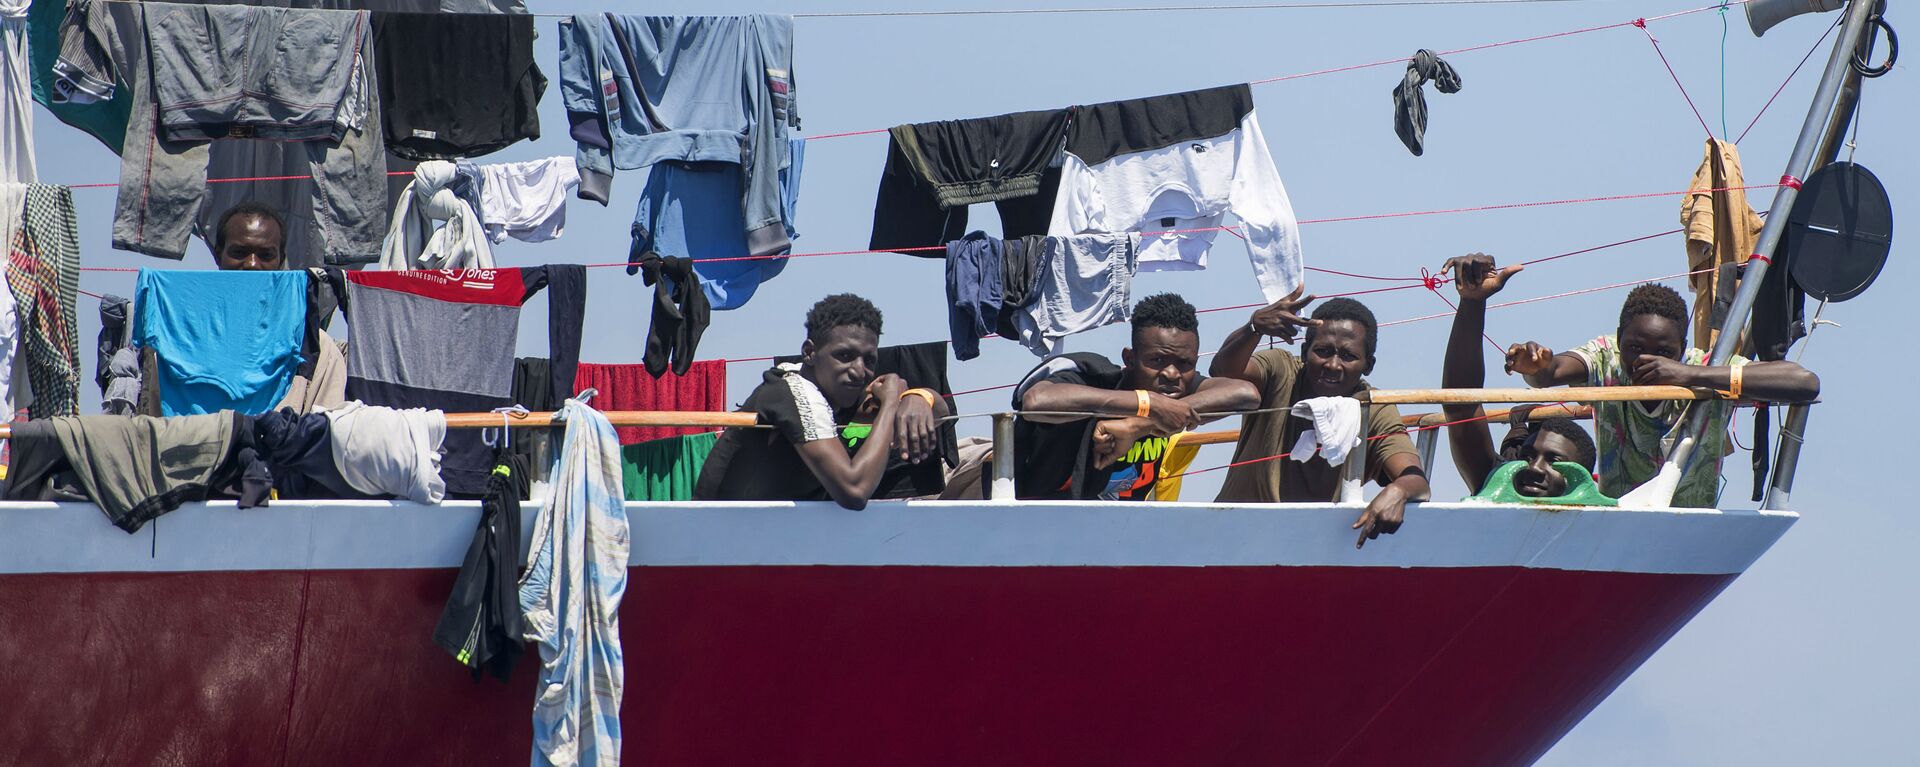 مهاجرون يقومون بنشر غسيلهم على قارب على بعد  20 كم من سواحل مالطا 2 يونيو 2020 - سبوتنيك عربي, 1920, 24.12.2020